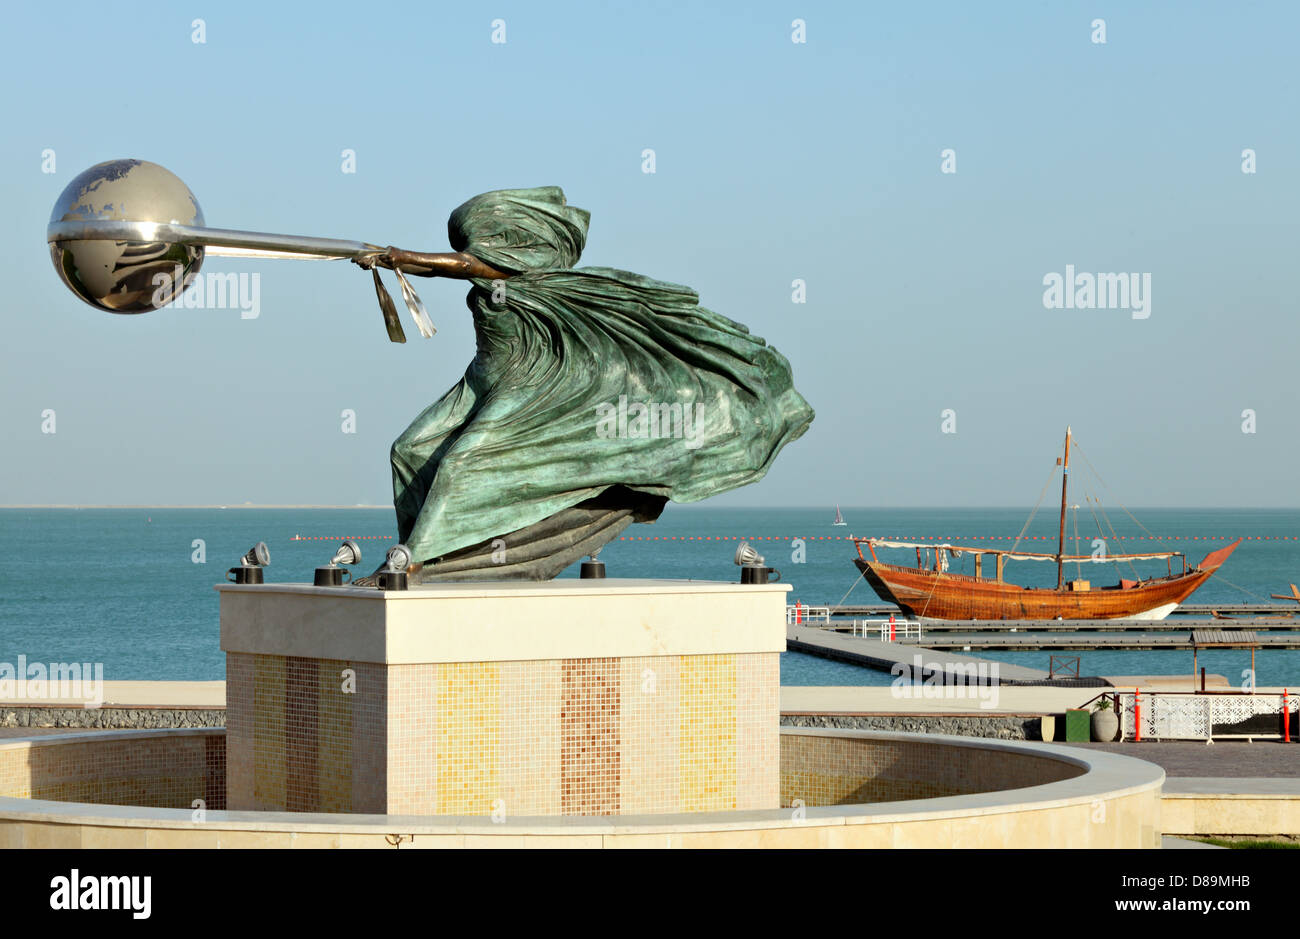 La force de la nature II par Lorenzo Quinn, exposée au village du patrimoine de Katara, Doha, Qatar, avec un boutre arabe derrière elle Banque D'Images